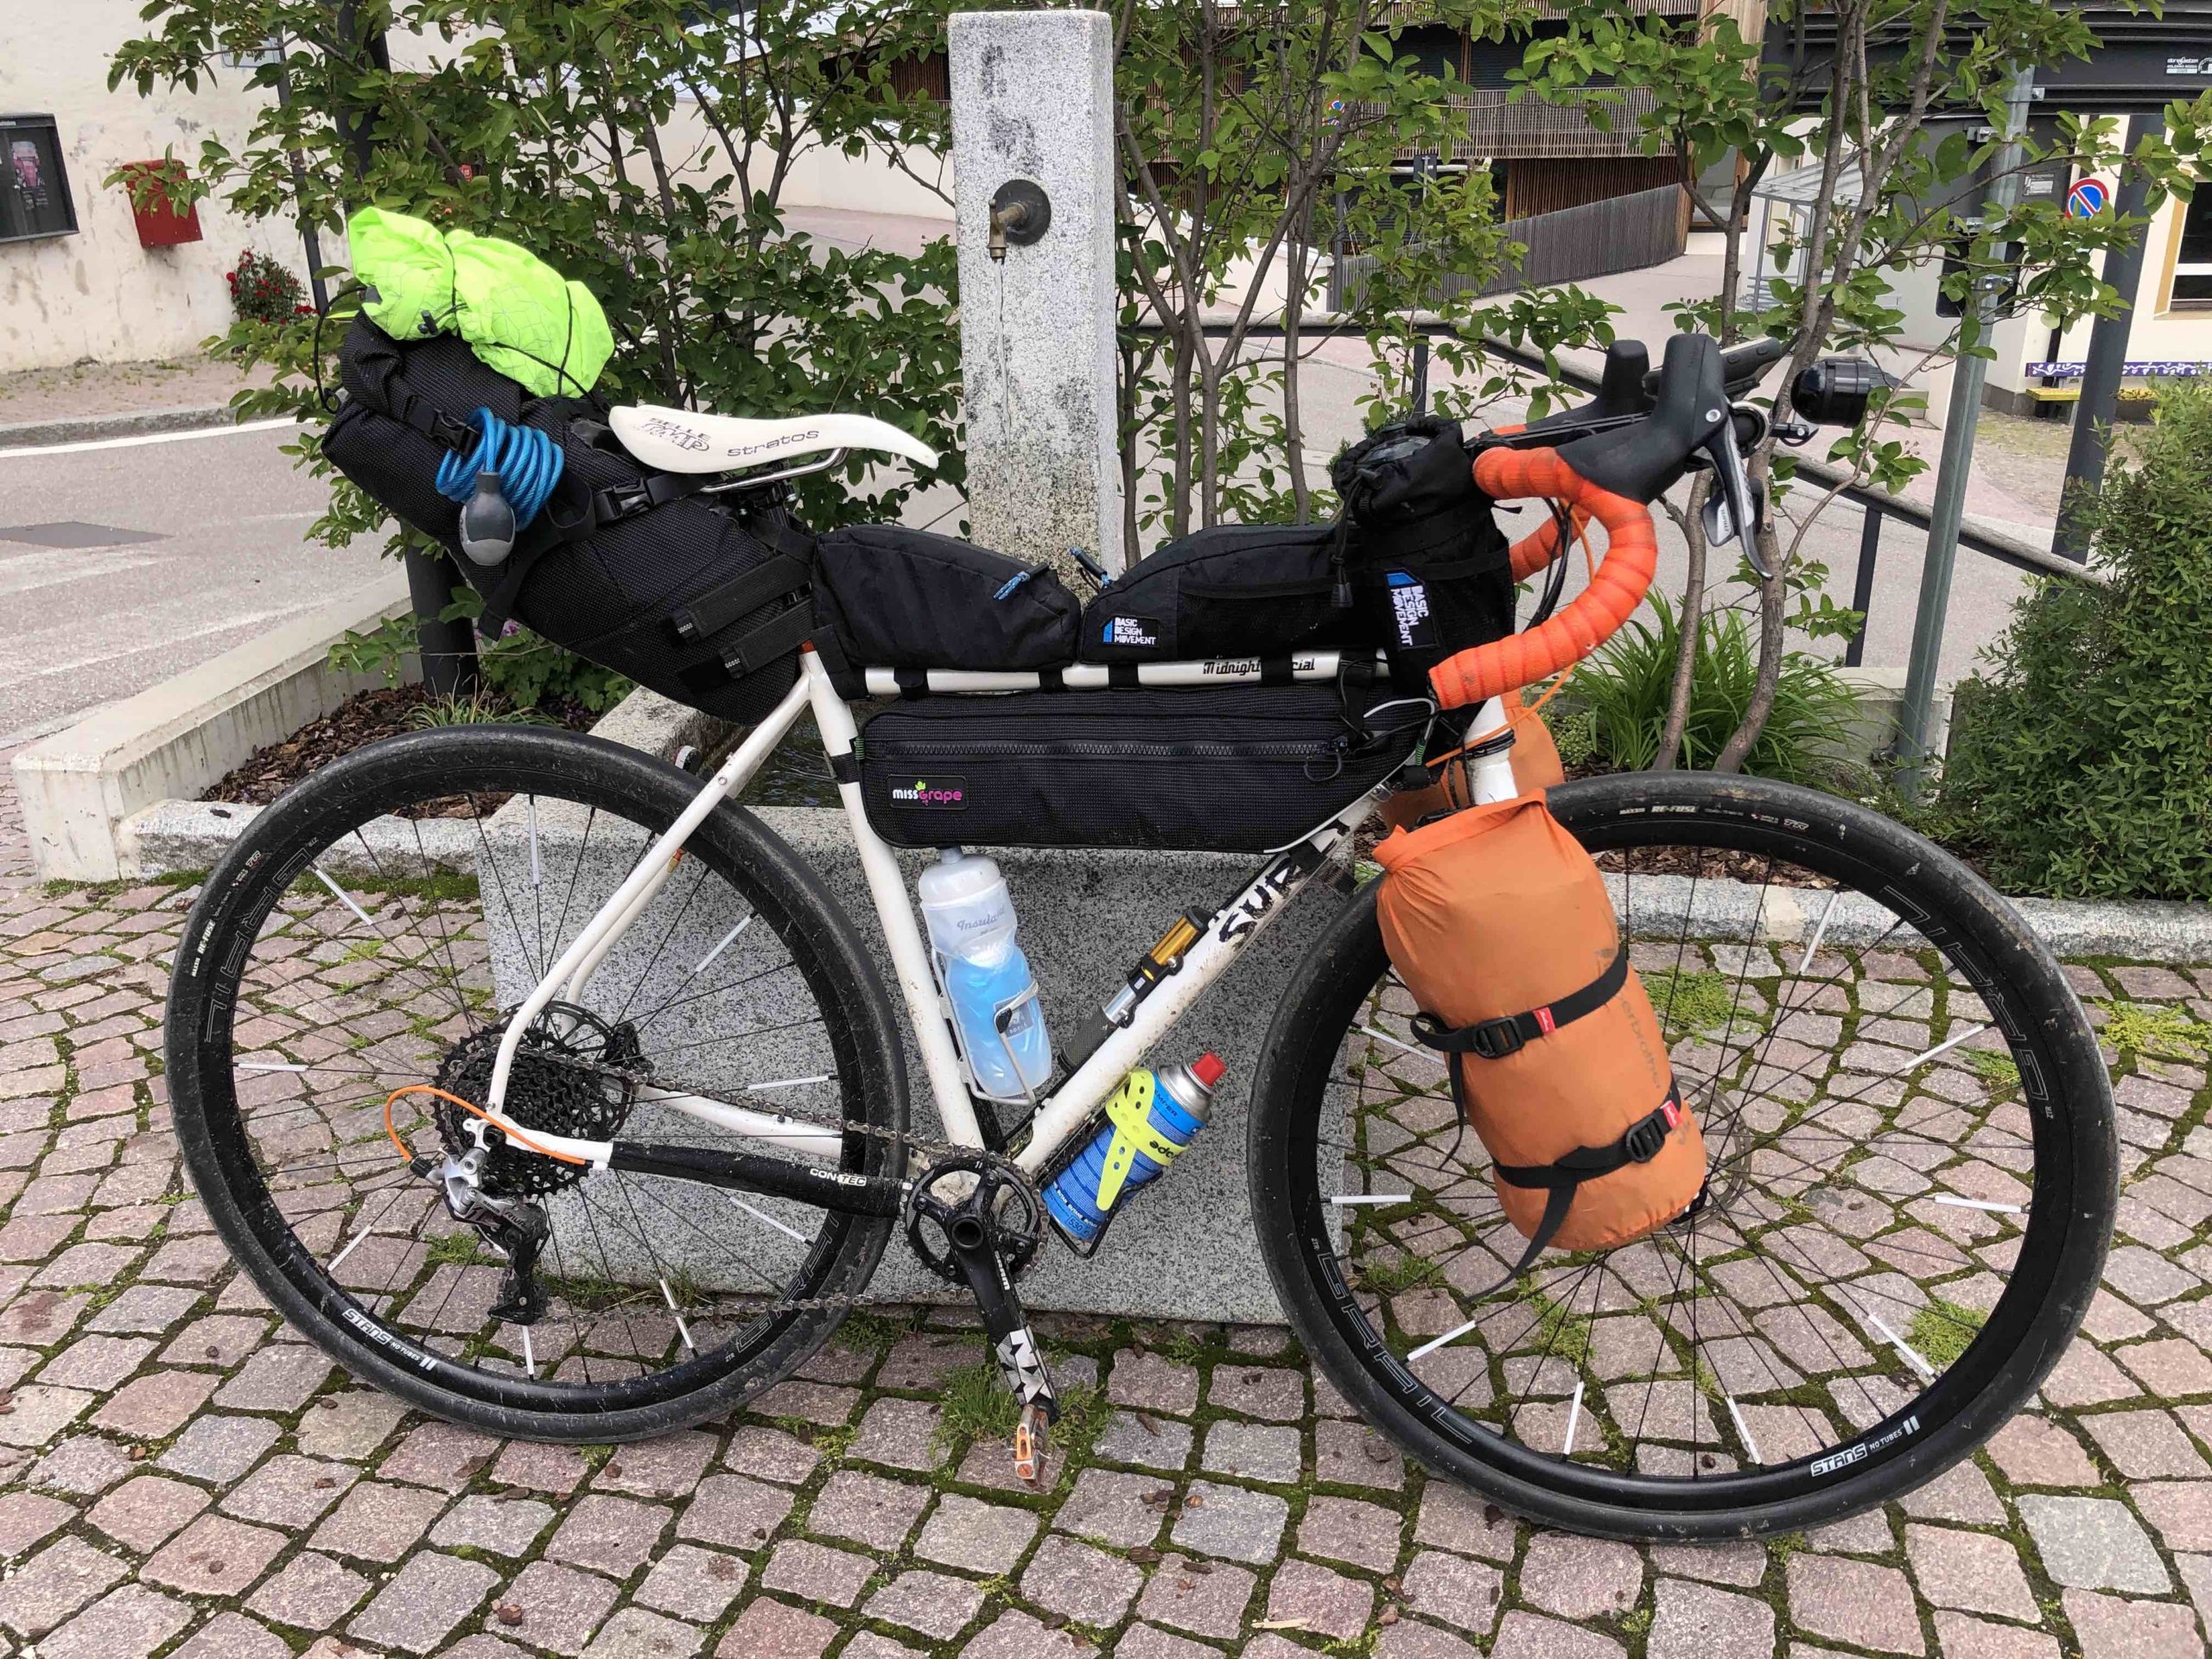 viaggiatore lento, surly, bagagli sulla bici, borse per bicicletta, viaggiare in bici, bikepacking, vacanze in bicicletta